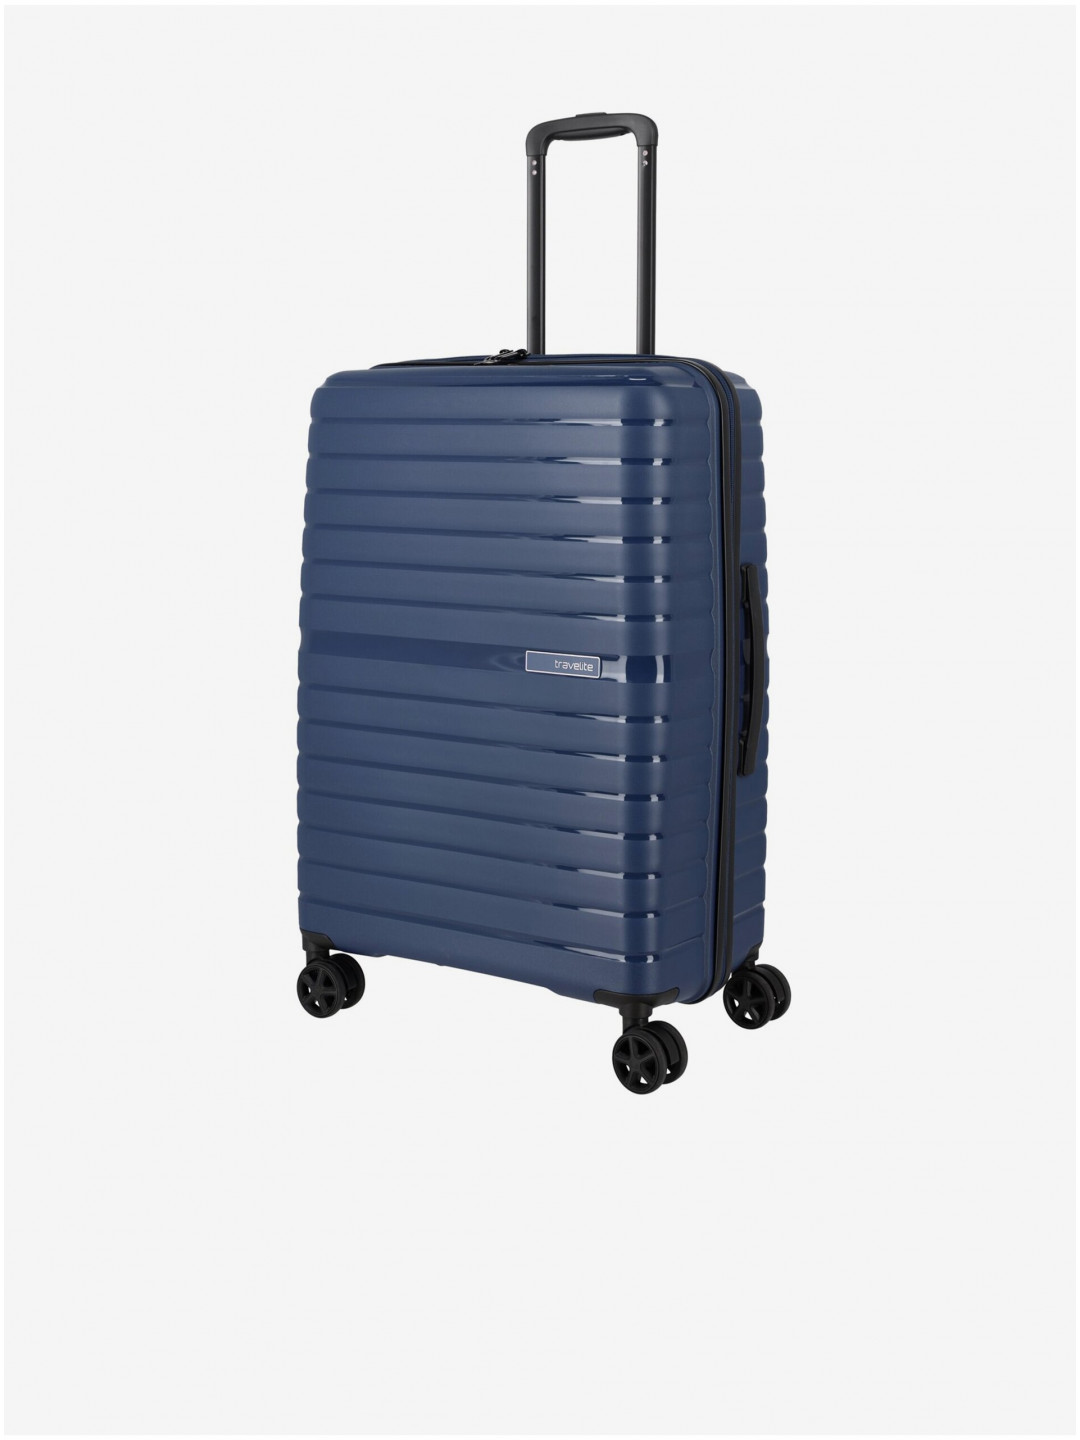 Tmavě modrý cestovní kufr Travelite Trient M Blue